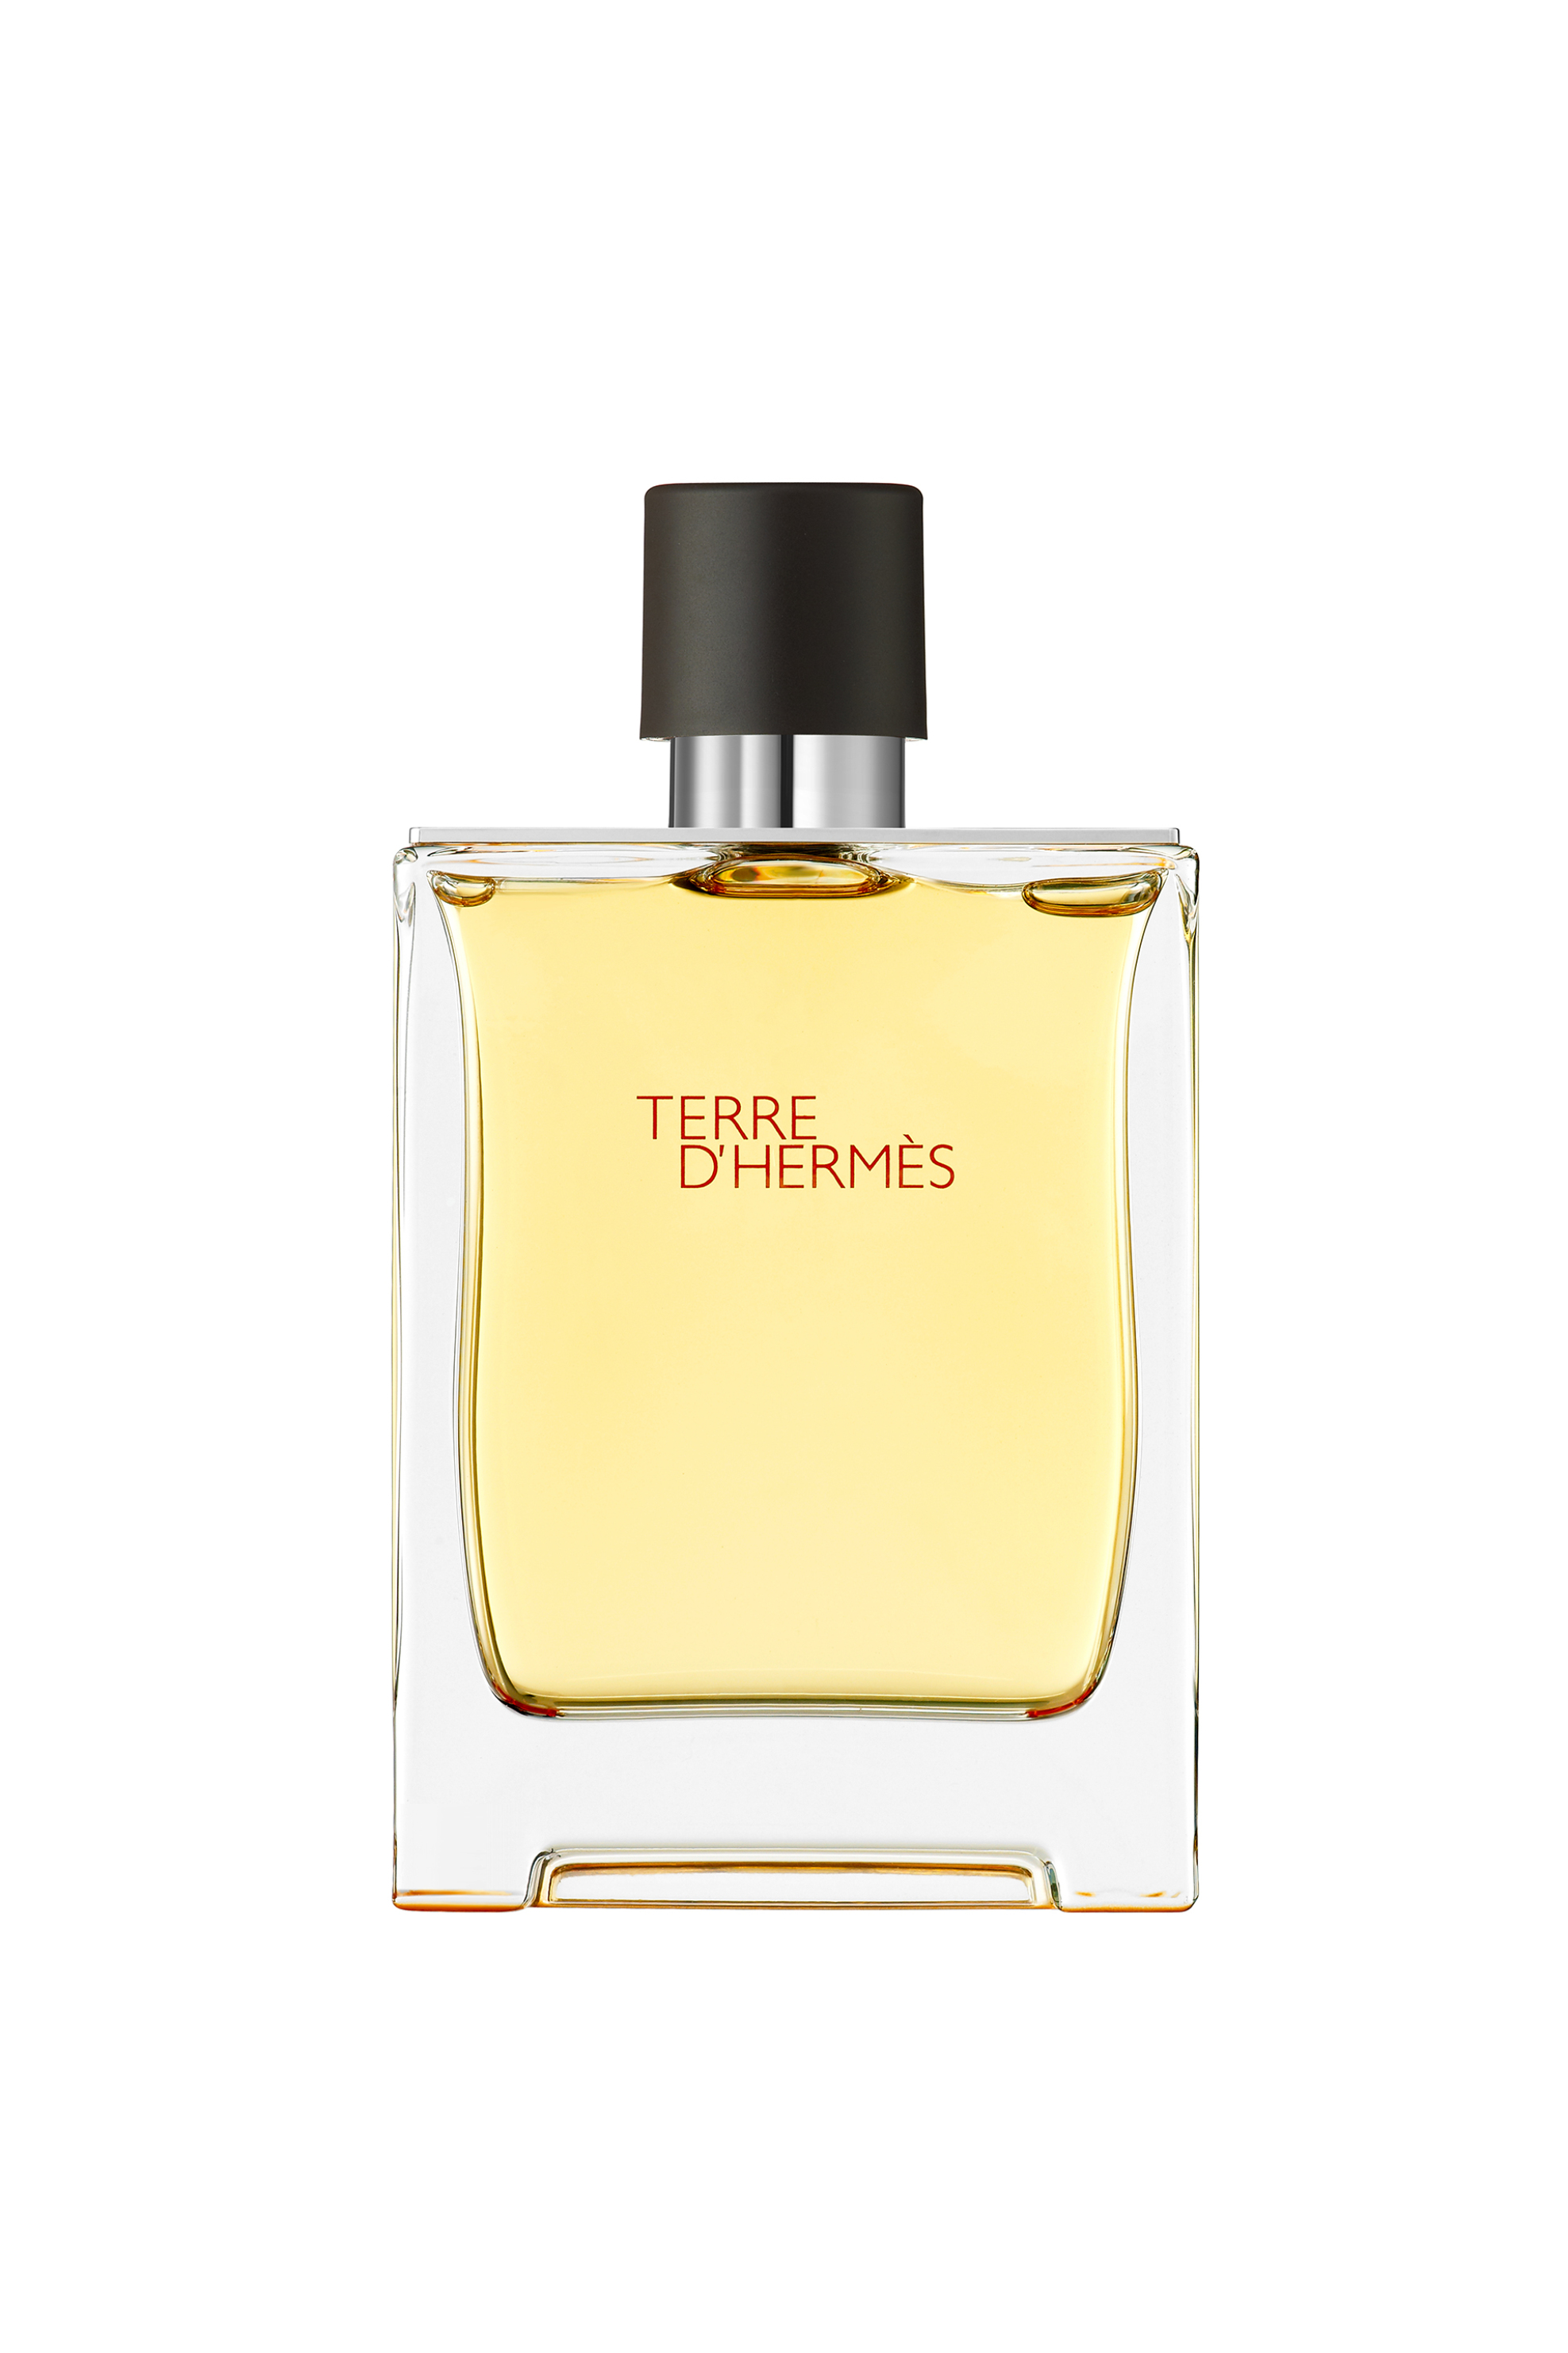 Προϊόντα Ομορφιάς > ΑΡΩΜΑΤΑ > Ανδρικά Αρώματα > Eau de Parfum - Parfum Hermès Terre d'Hermès Parfum - 107758V0